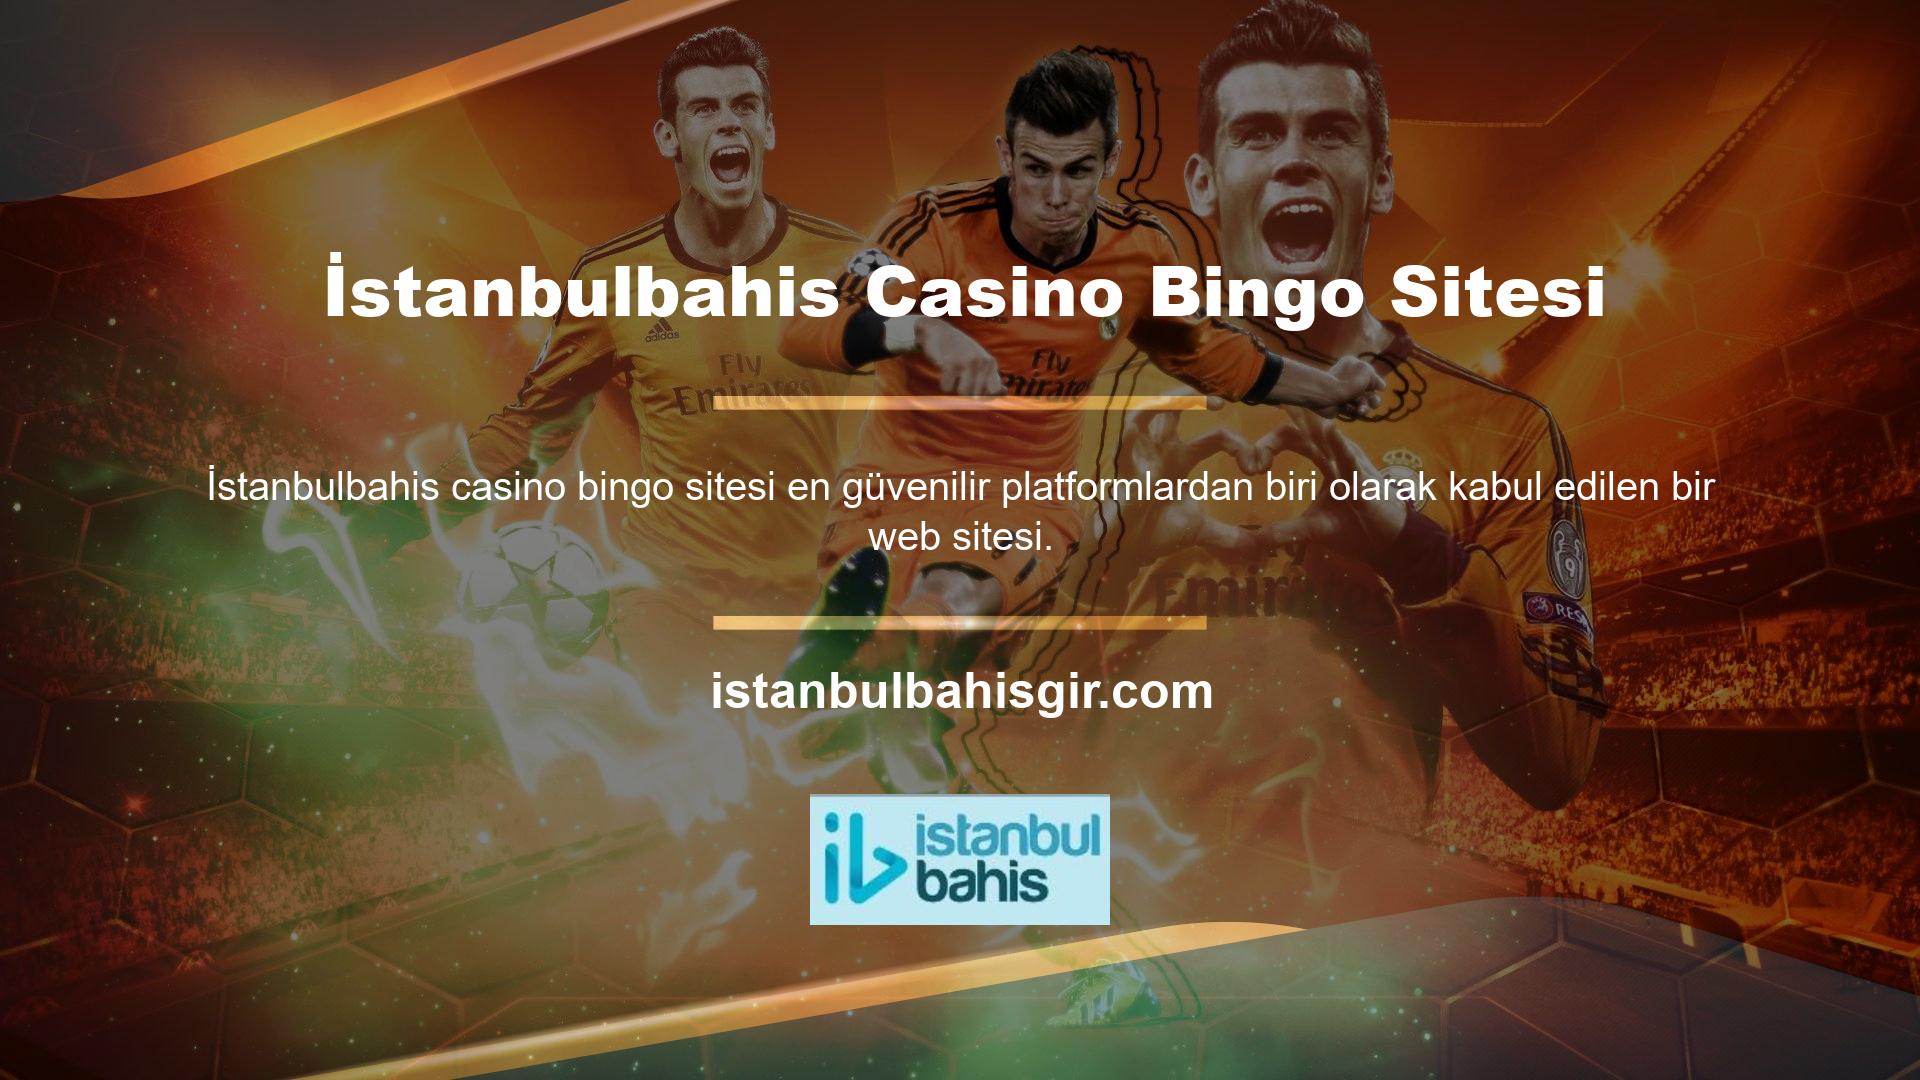 Tipik bir casino deneyimi sunmanın yanı sıra casino oyunları da sunuyor